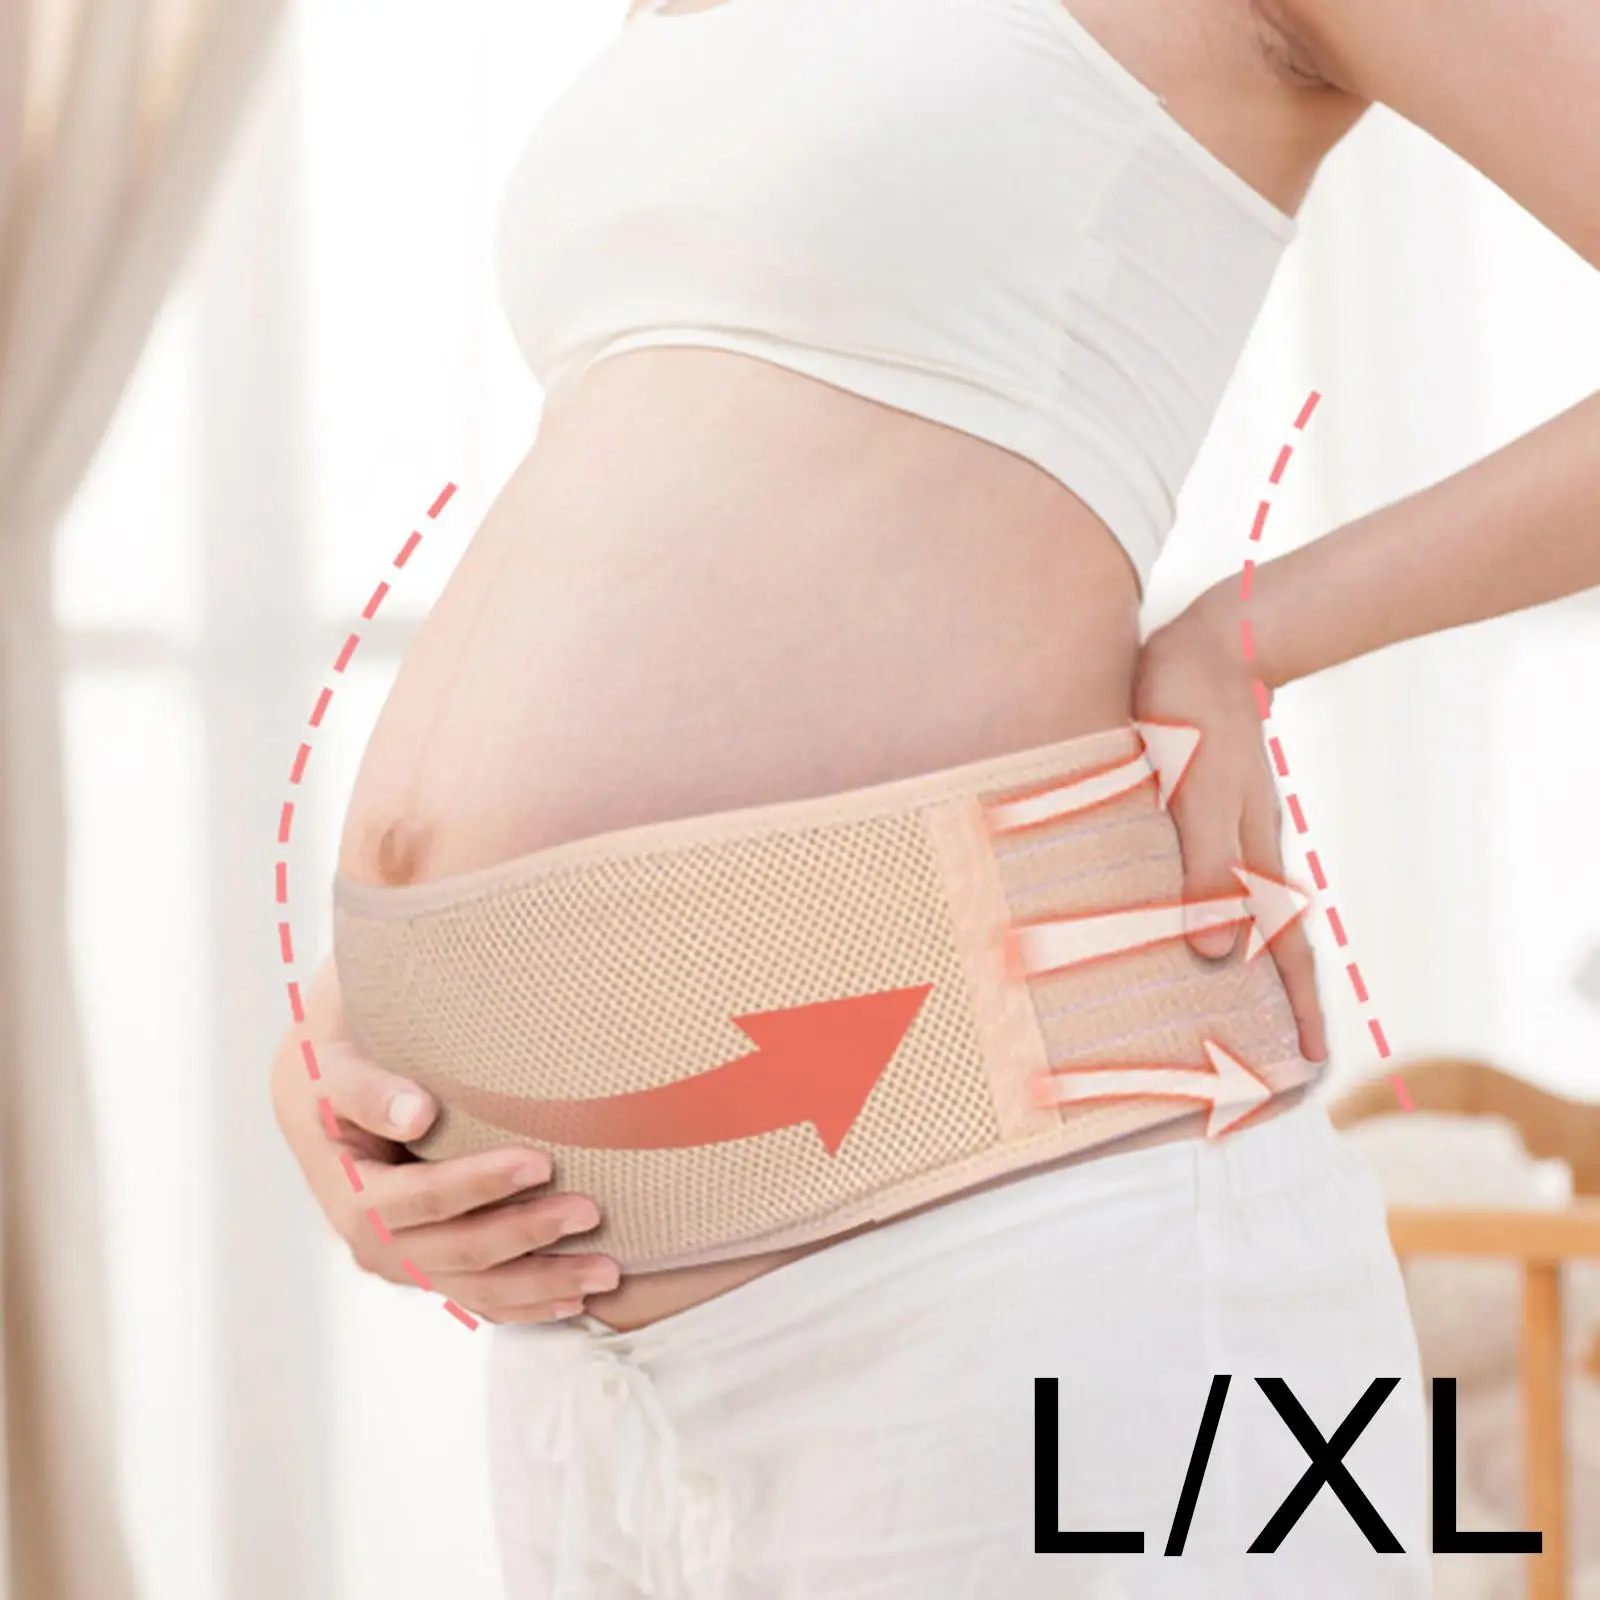 Maternity Belt Lightweight Adjustable Pelvis/Waist/Back/Abdominal Support Belt Pregnancy Belly Support Band Tummy Band Sling